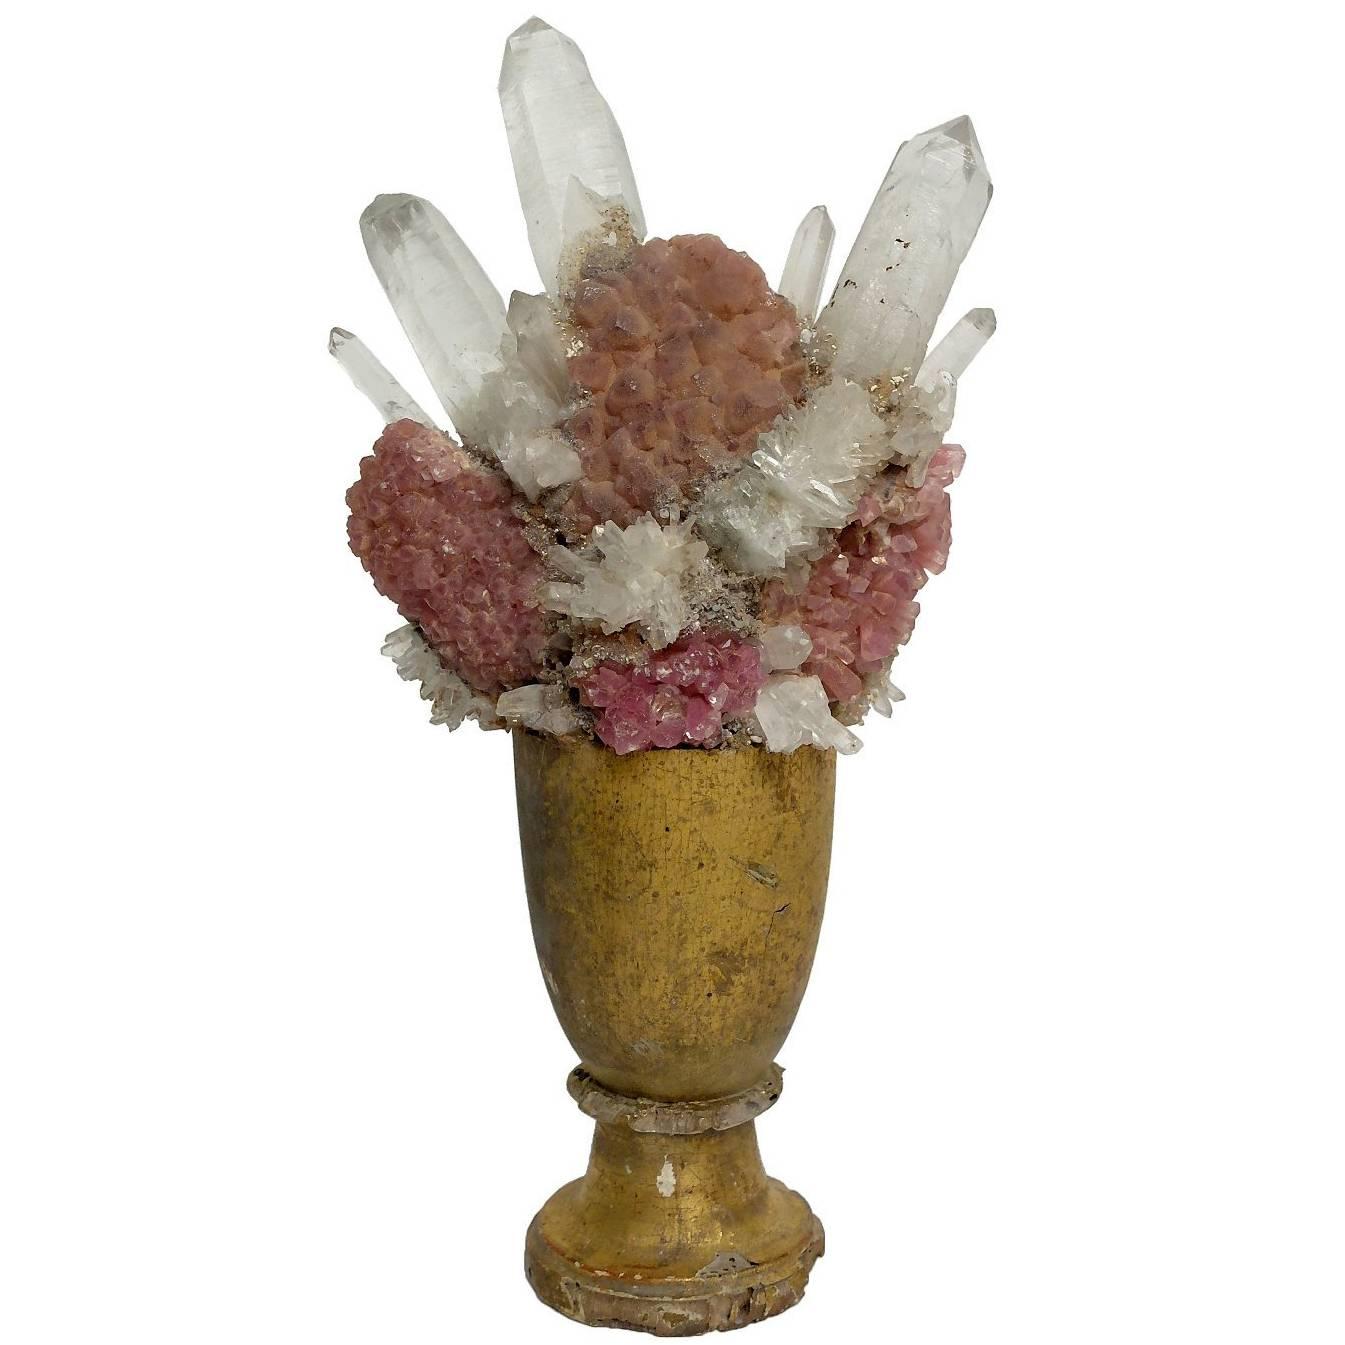 Wunderkammer Naturalia Mineral Specimen, Adruze of Rock Crystal and Pink Quartz